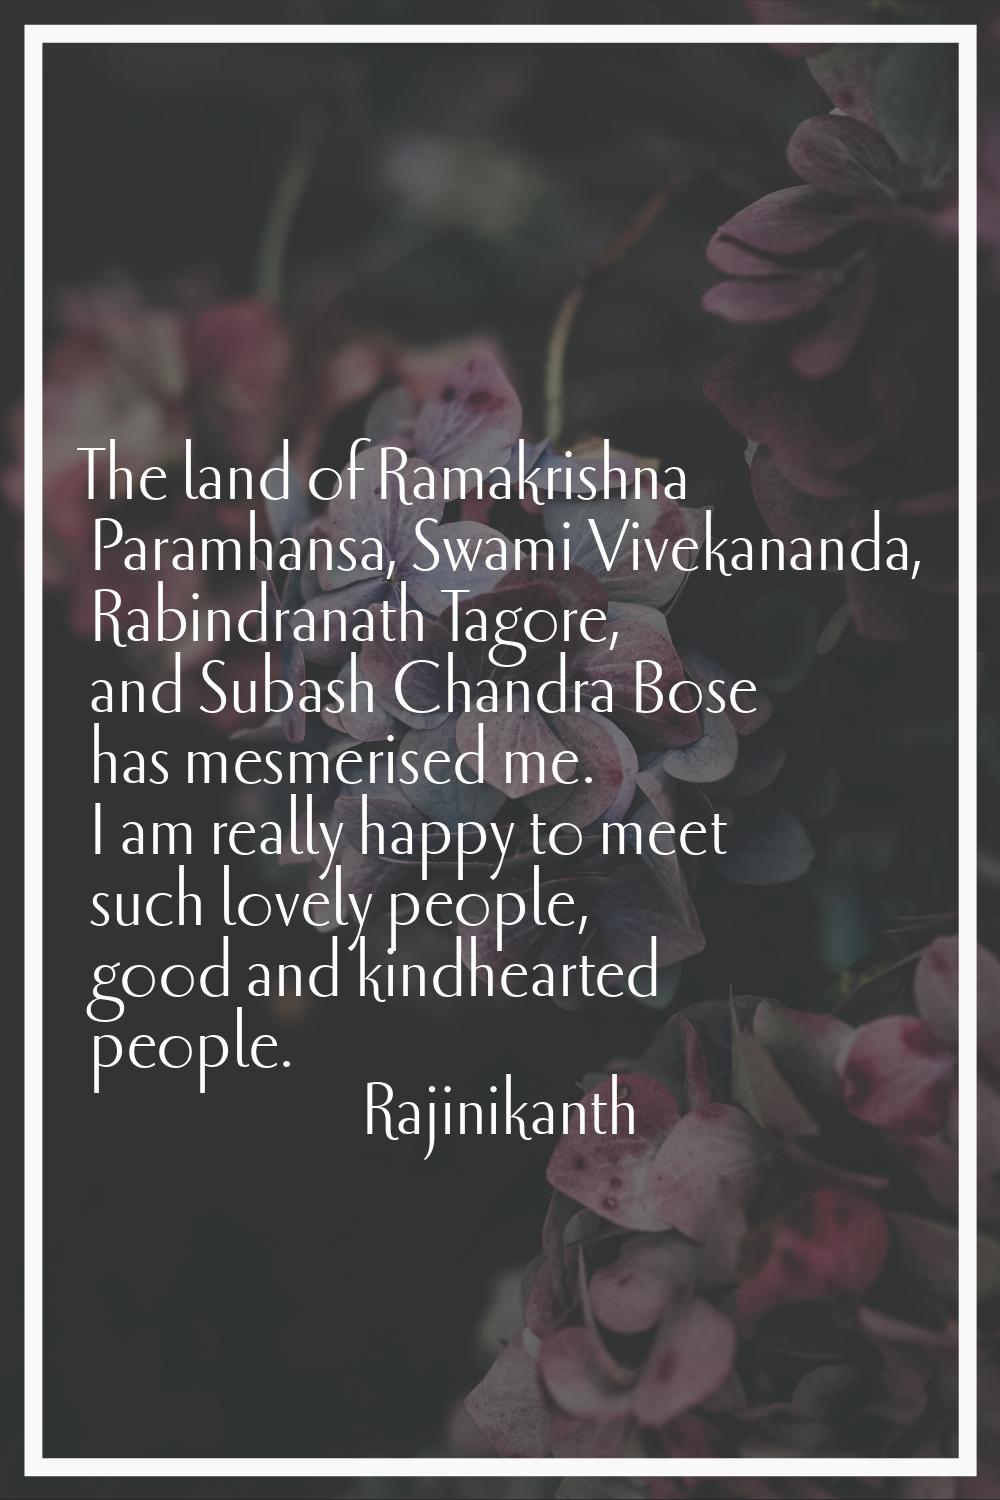 The land of Ramakrishna Paramhansa, Swami Vivekananda, Rabindranath Tagore, and Subash Chandra Bose